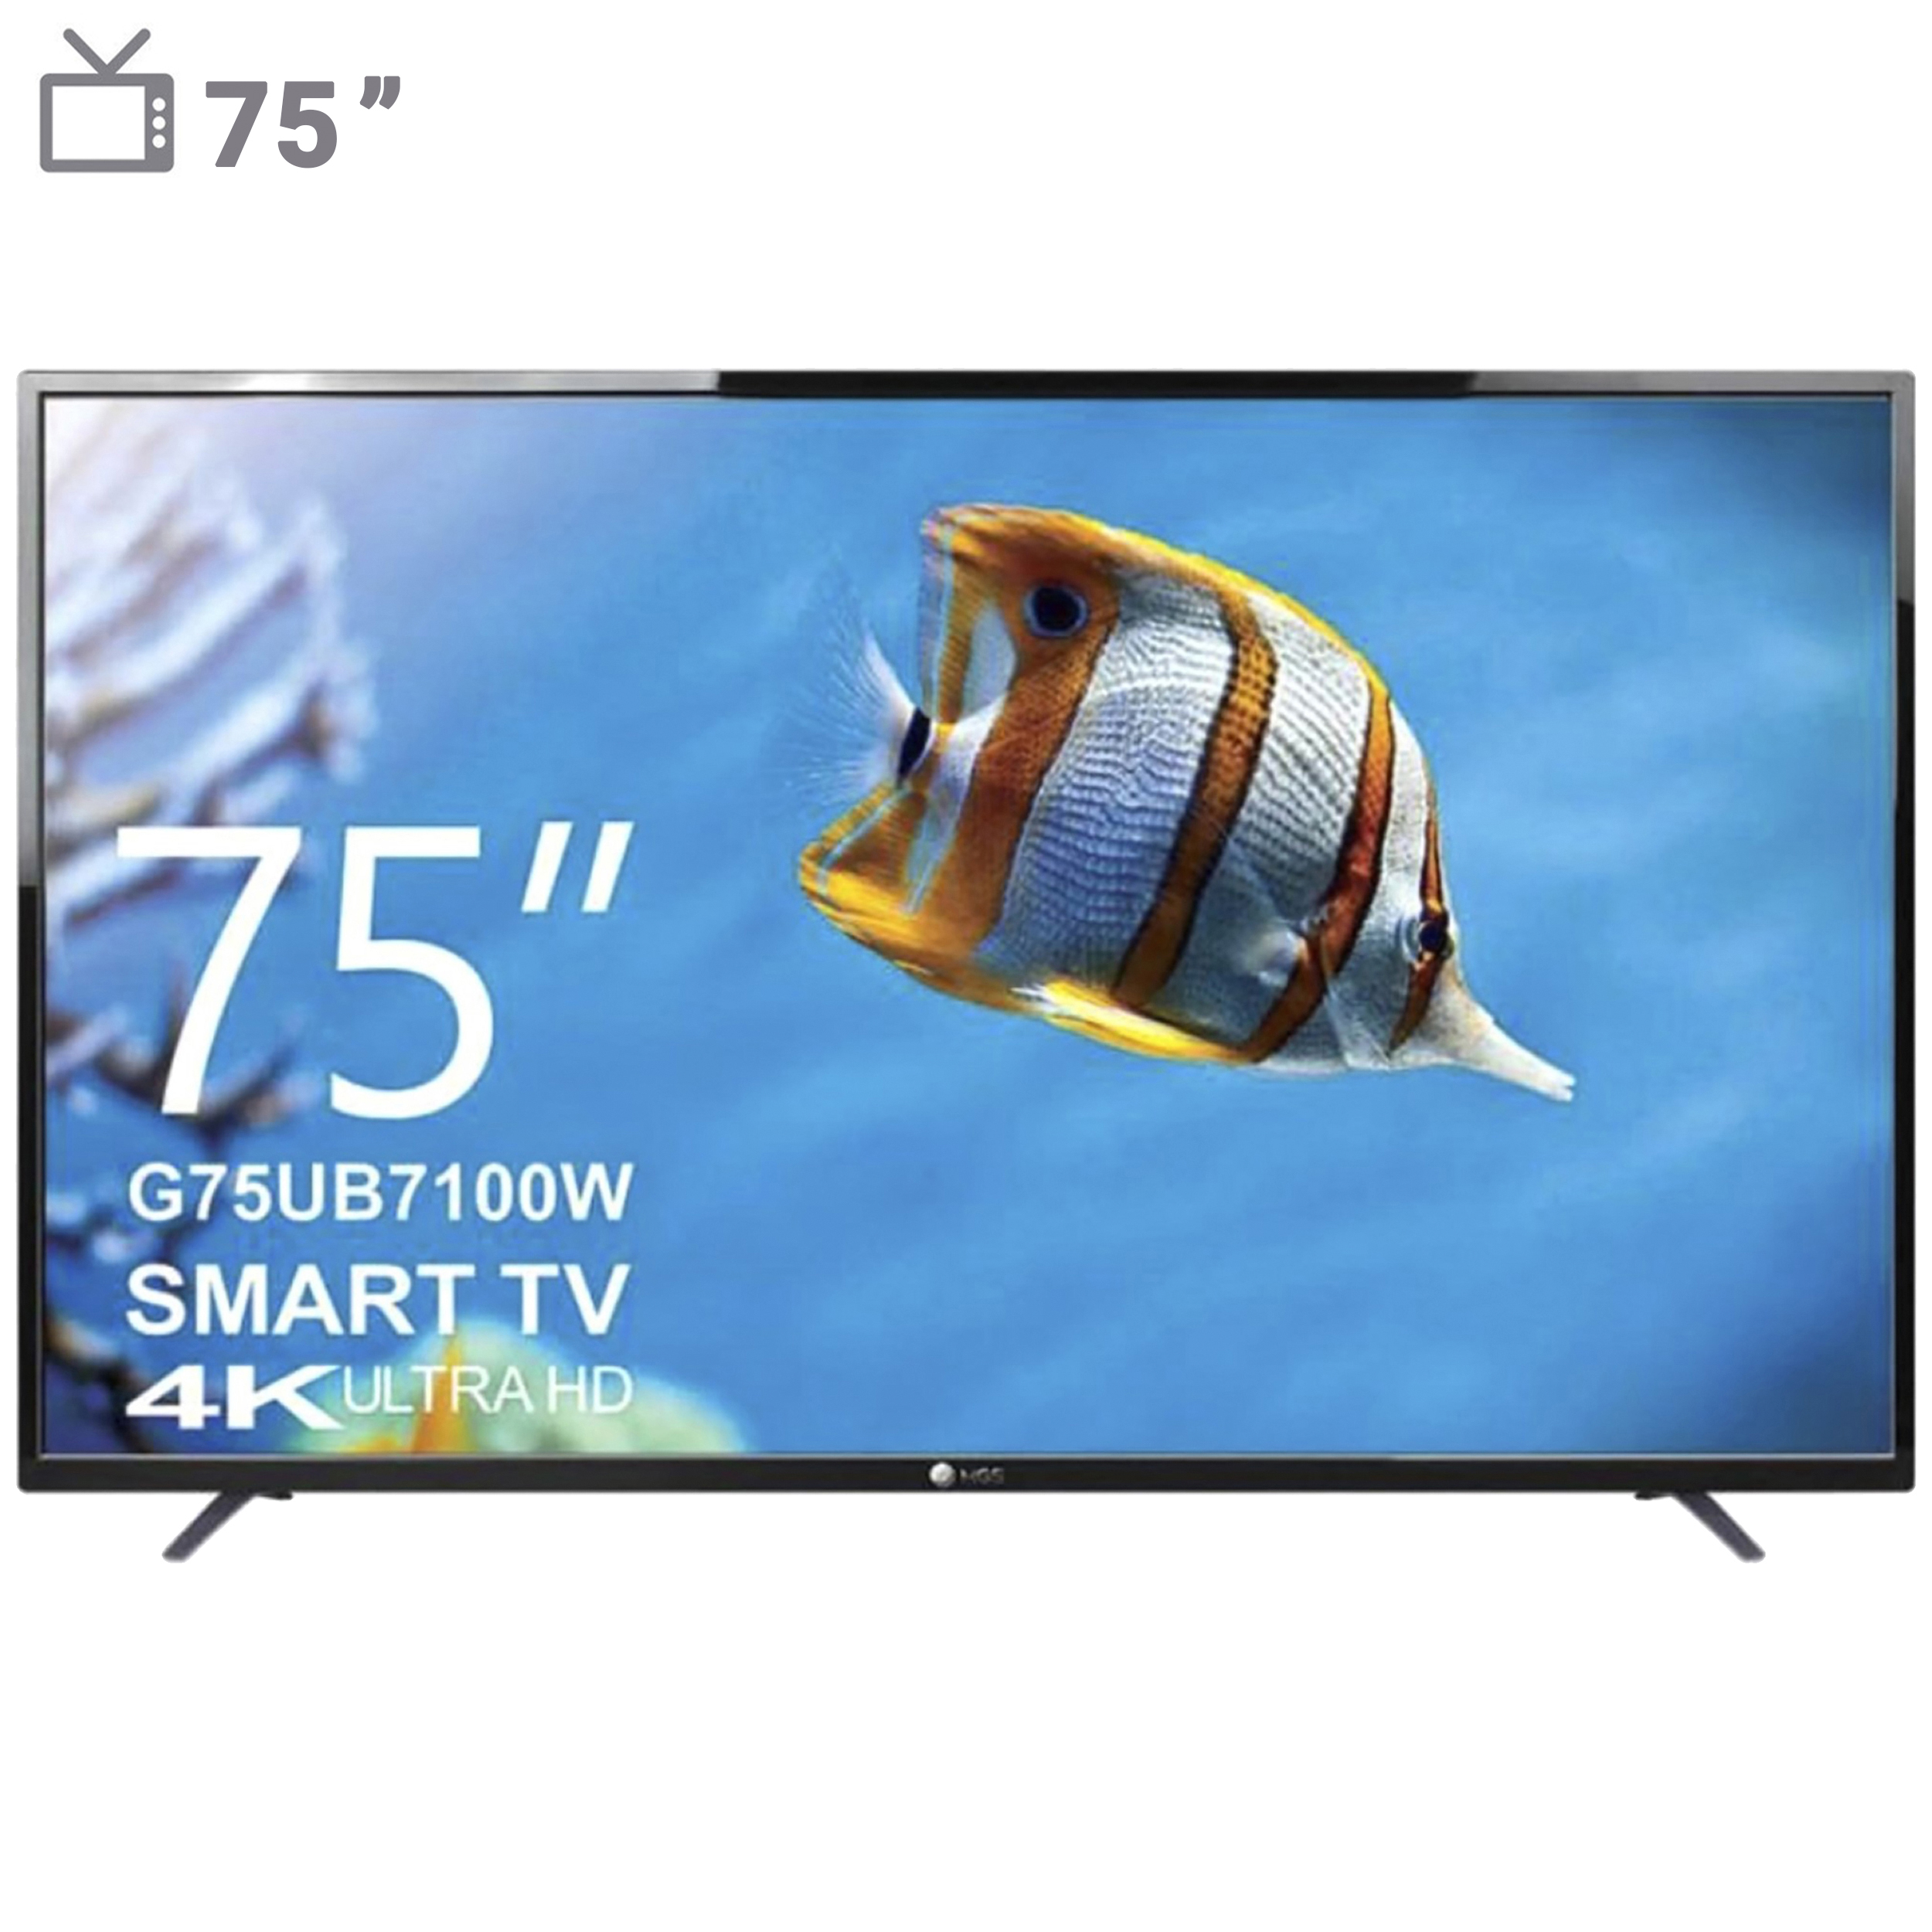  تلویزیون ال ای دی فوق هوشمند ام جی اس مدل G75UB7100W سایز 75-اینچ